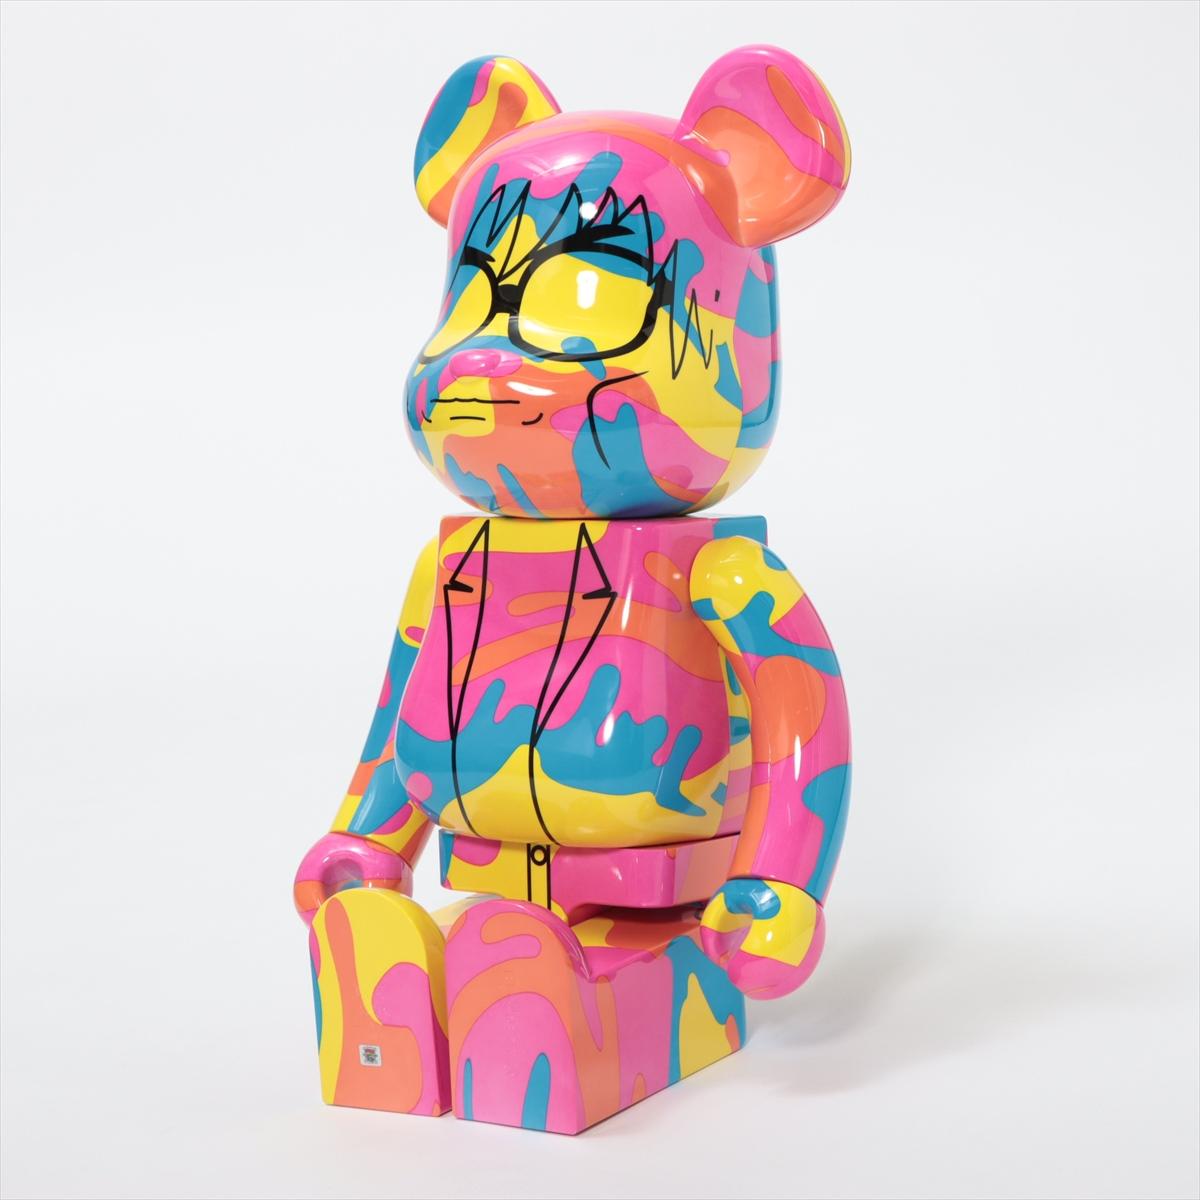 Der Bearbrick Andy Warhol Special Multicolor ist ein verspieltes und stilvolles Sammelspielzeug, das zeitgenössisches Design mit einem Hauch von Laune verbindet. Die Bearbrick-Figur besticht durch ihre leuchtenden Farben und ihre mutige Ästhetik.